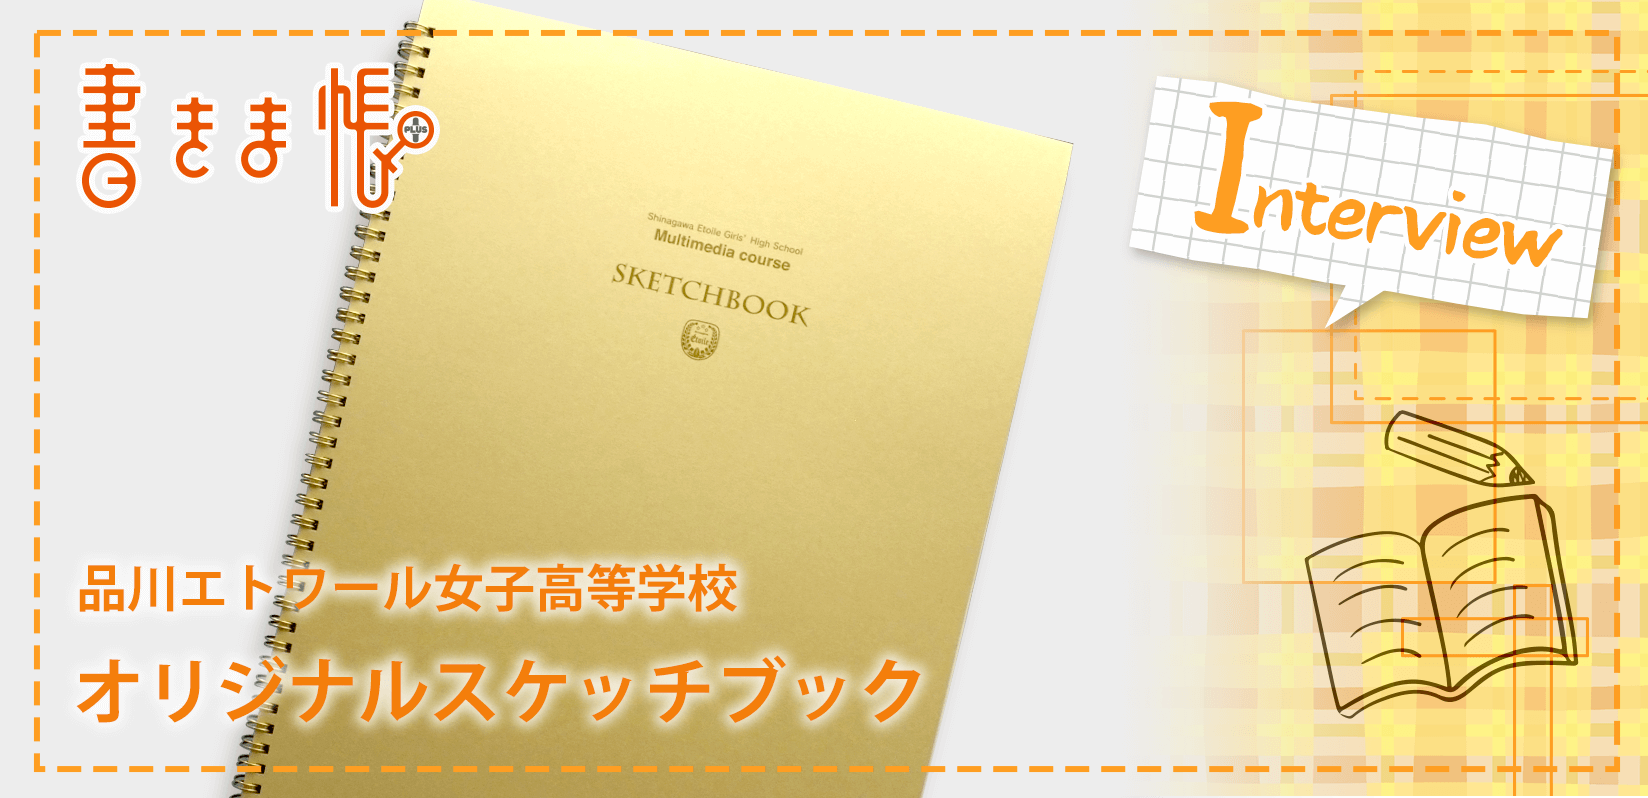 品川エトワール女子高等学校様製作のオリジナルノート「オリジナルスケッチブック」